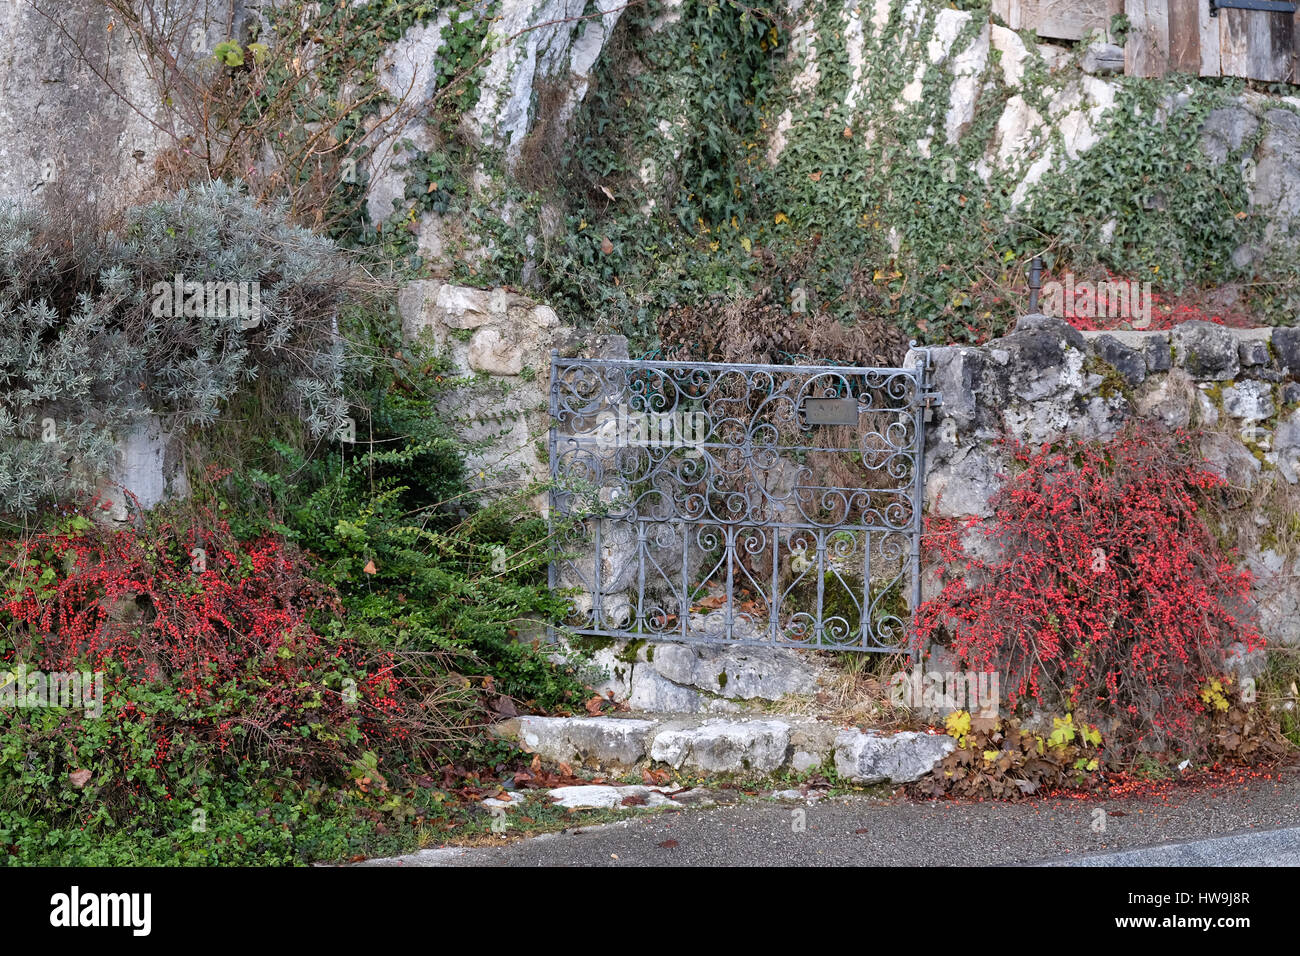 Design classique porte en fer forgé dans un magnifique jardin, le 13 décembre 2014 à Hallstatt, Autriche. Banque D'Images